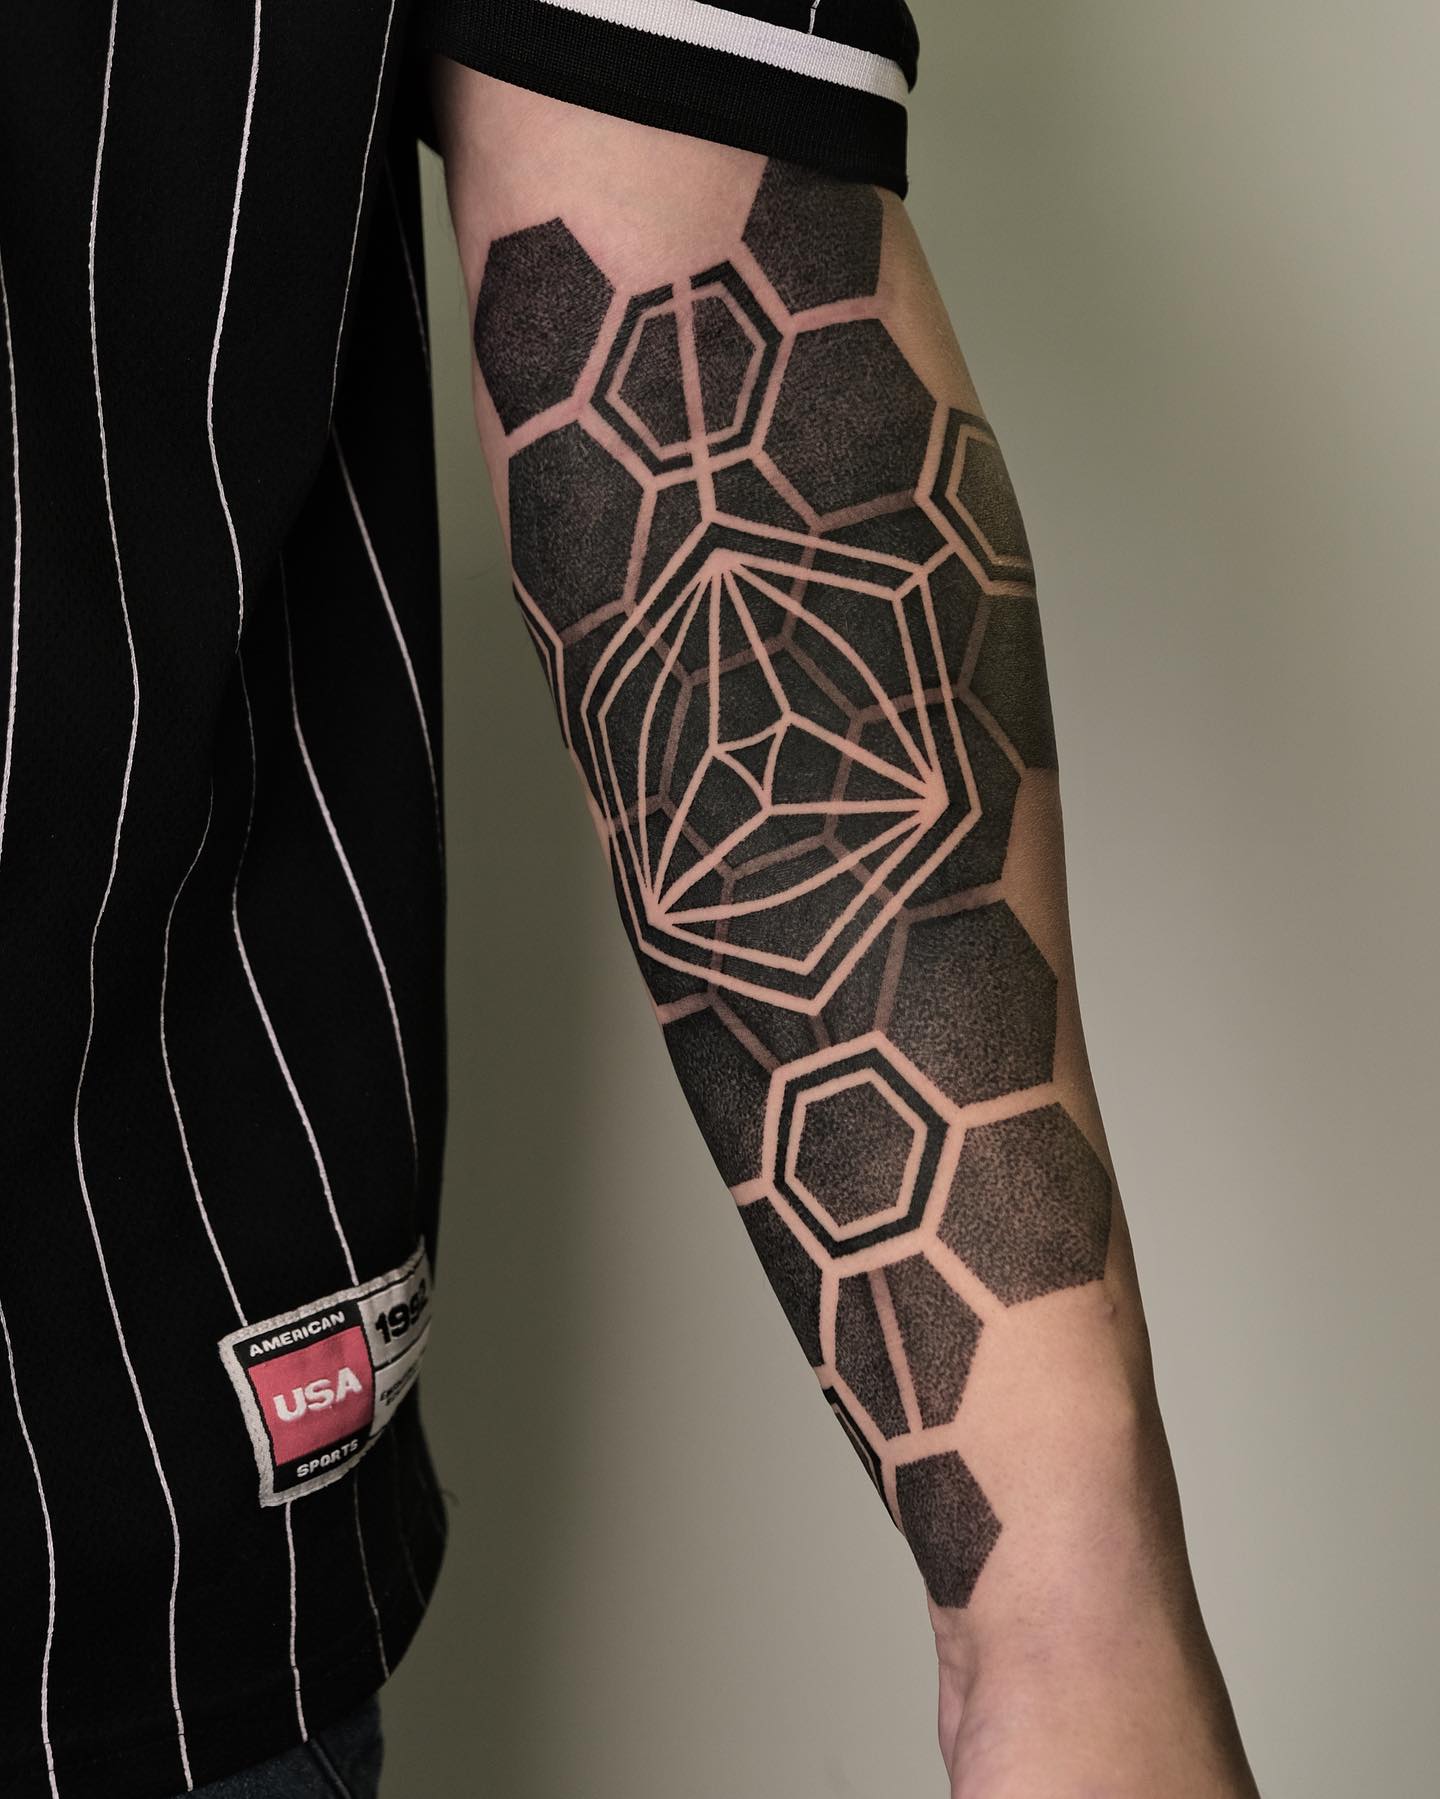 Blackwork/geometric style sleeves.